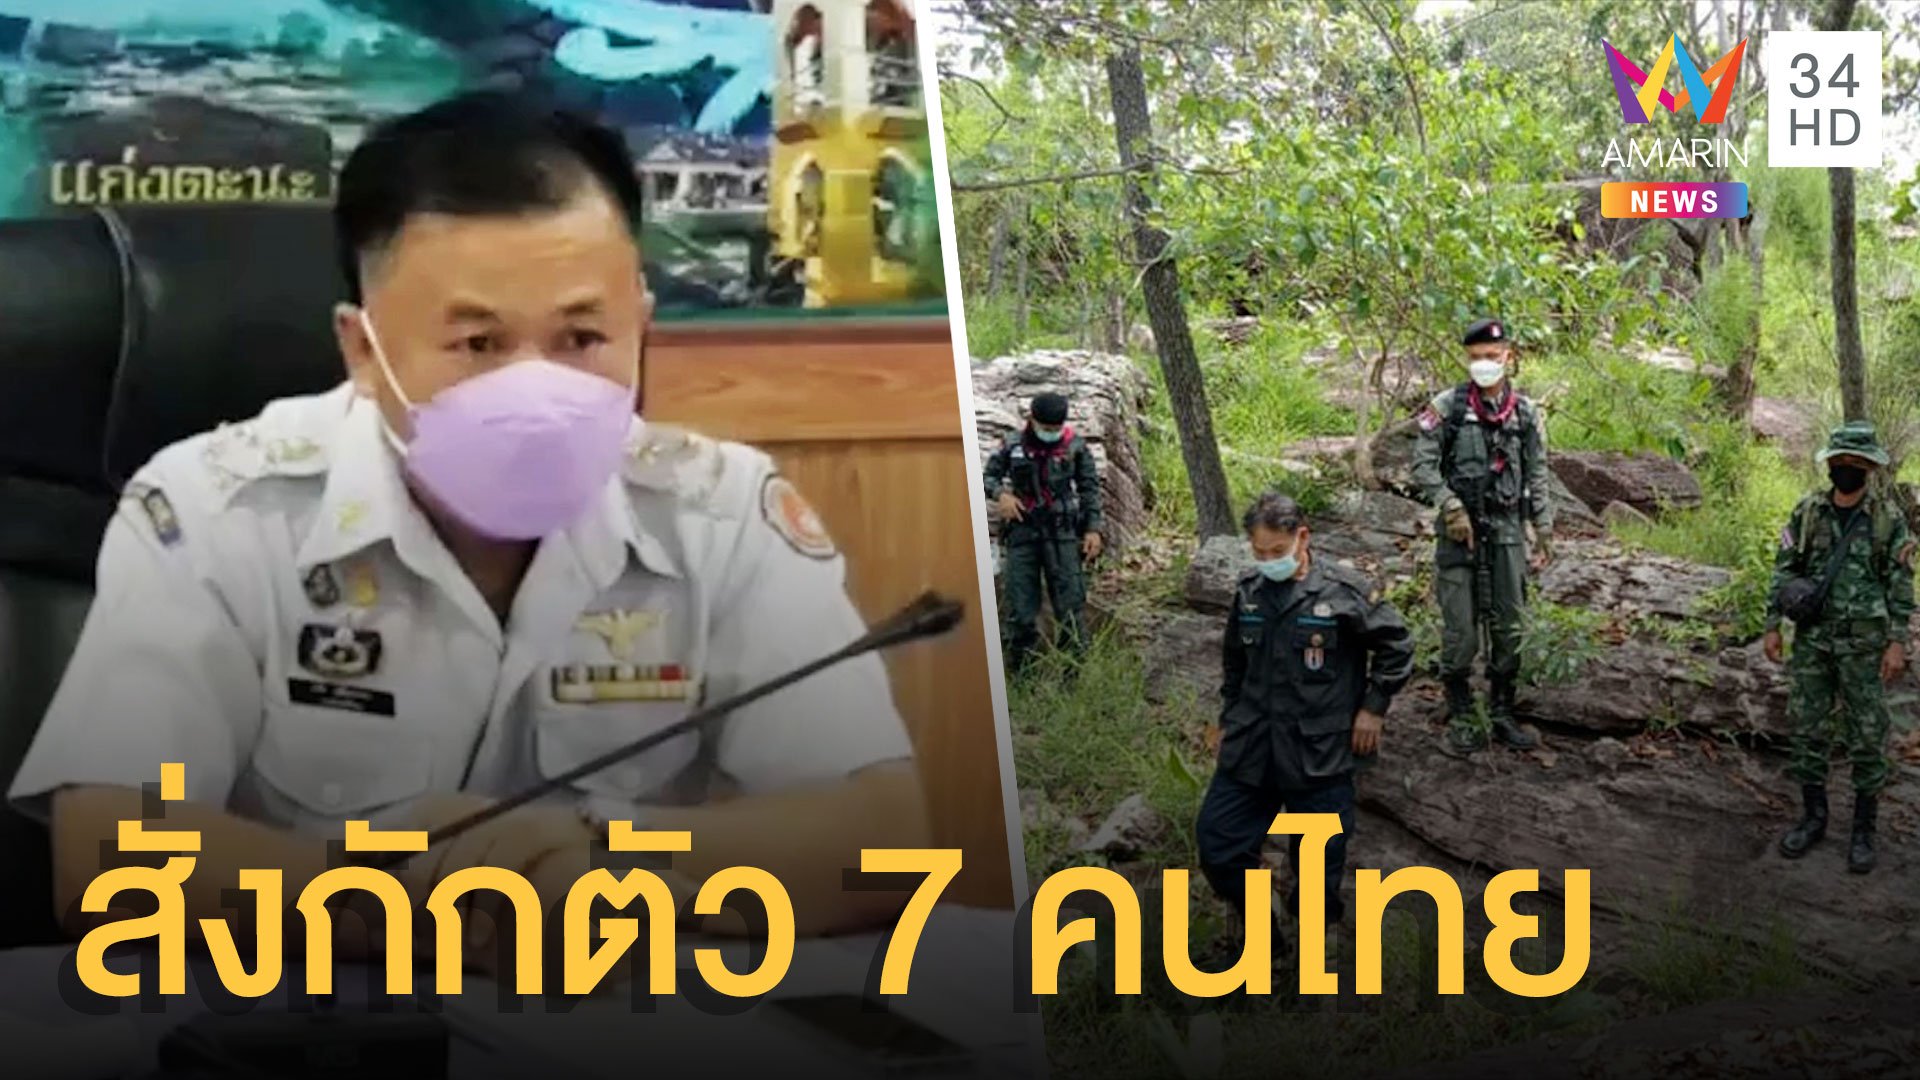 ลาวคุมตัว 7 คนไทยเก็บเห็ดล้ำแดน สั่งกักตัวฉีดวัคซีนโควิดให้ | ข่าวอรุณอมรินทร์ | 3 ส.ค. 64 | AMARIN TVHD34